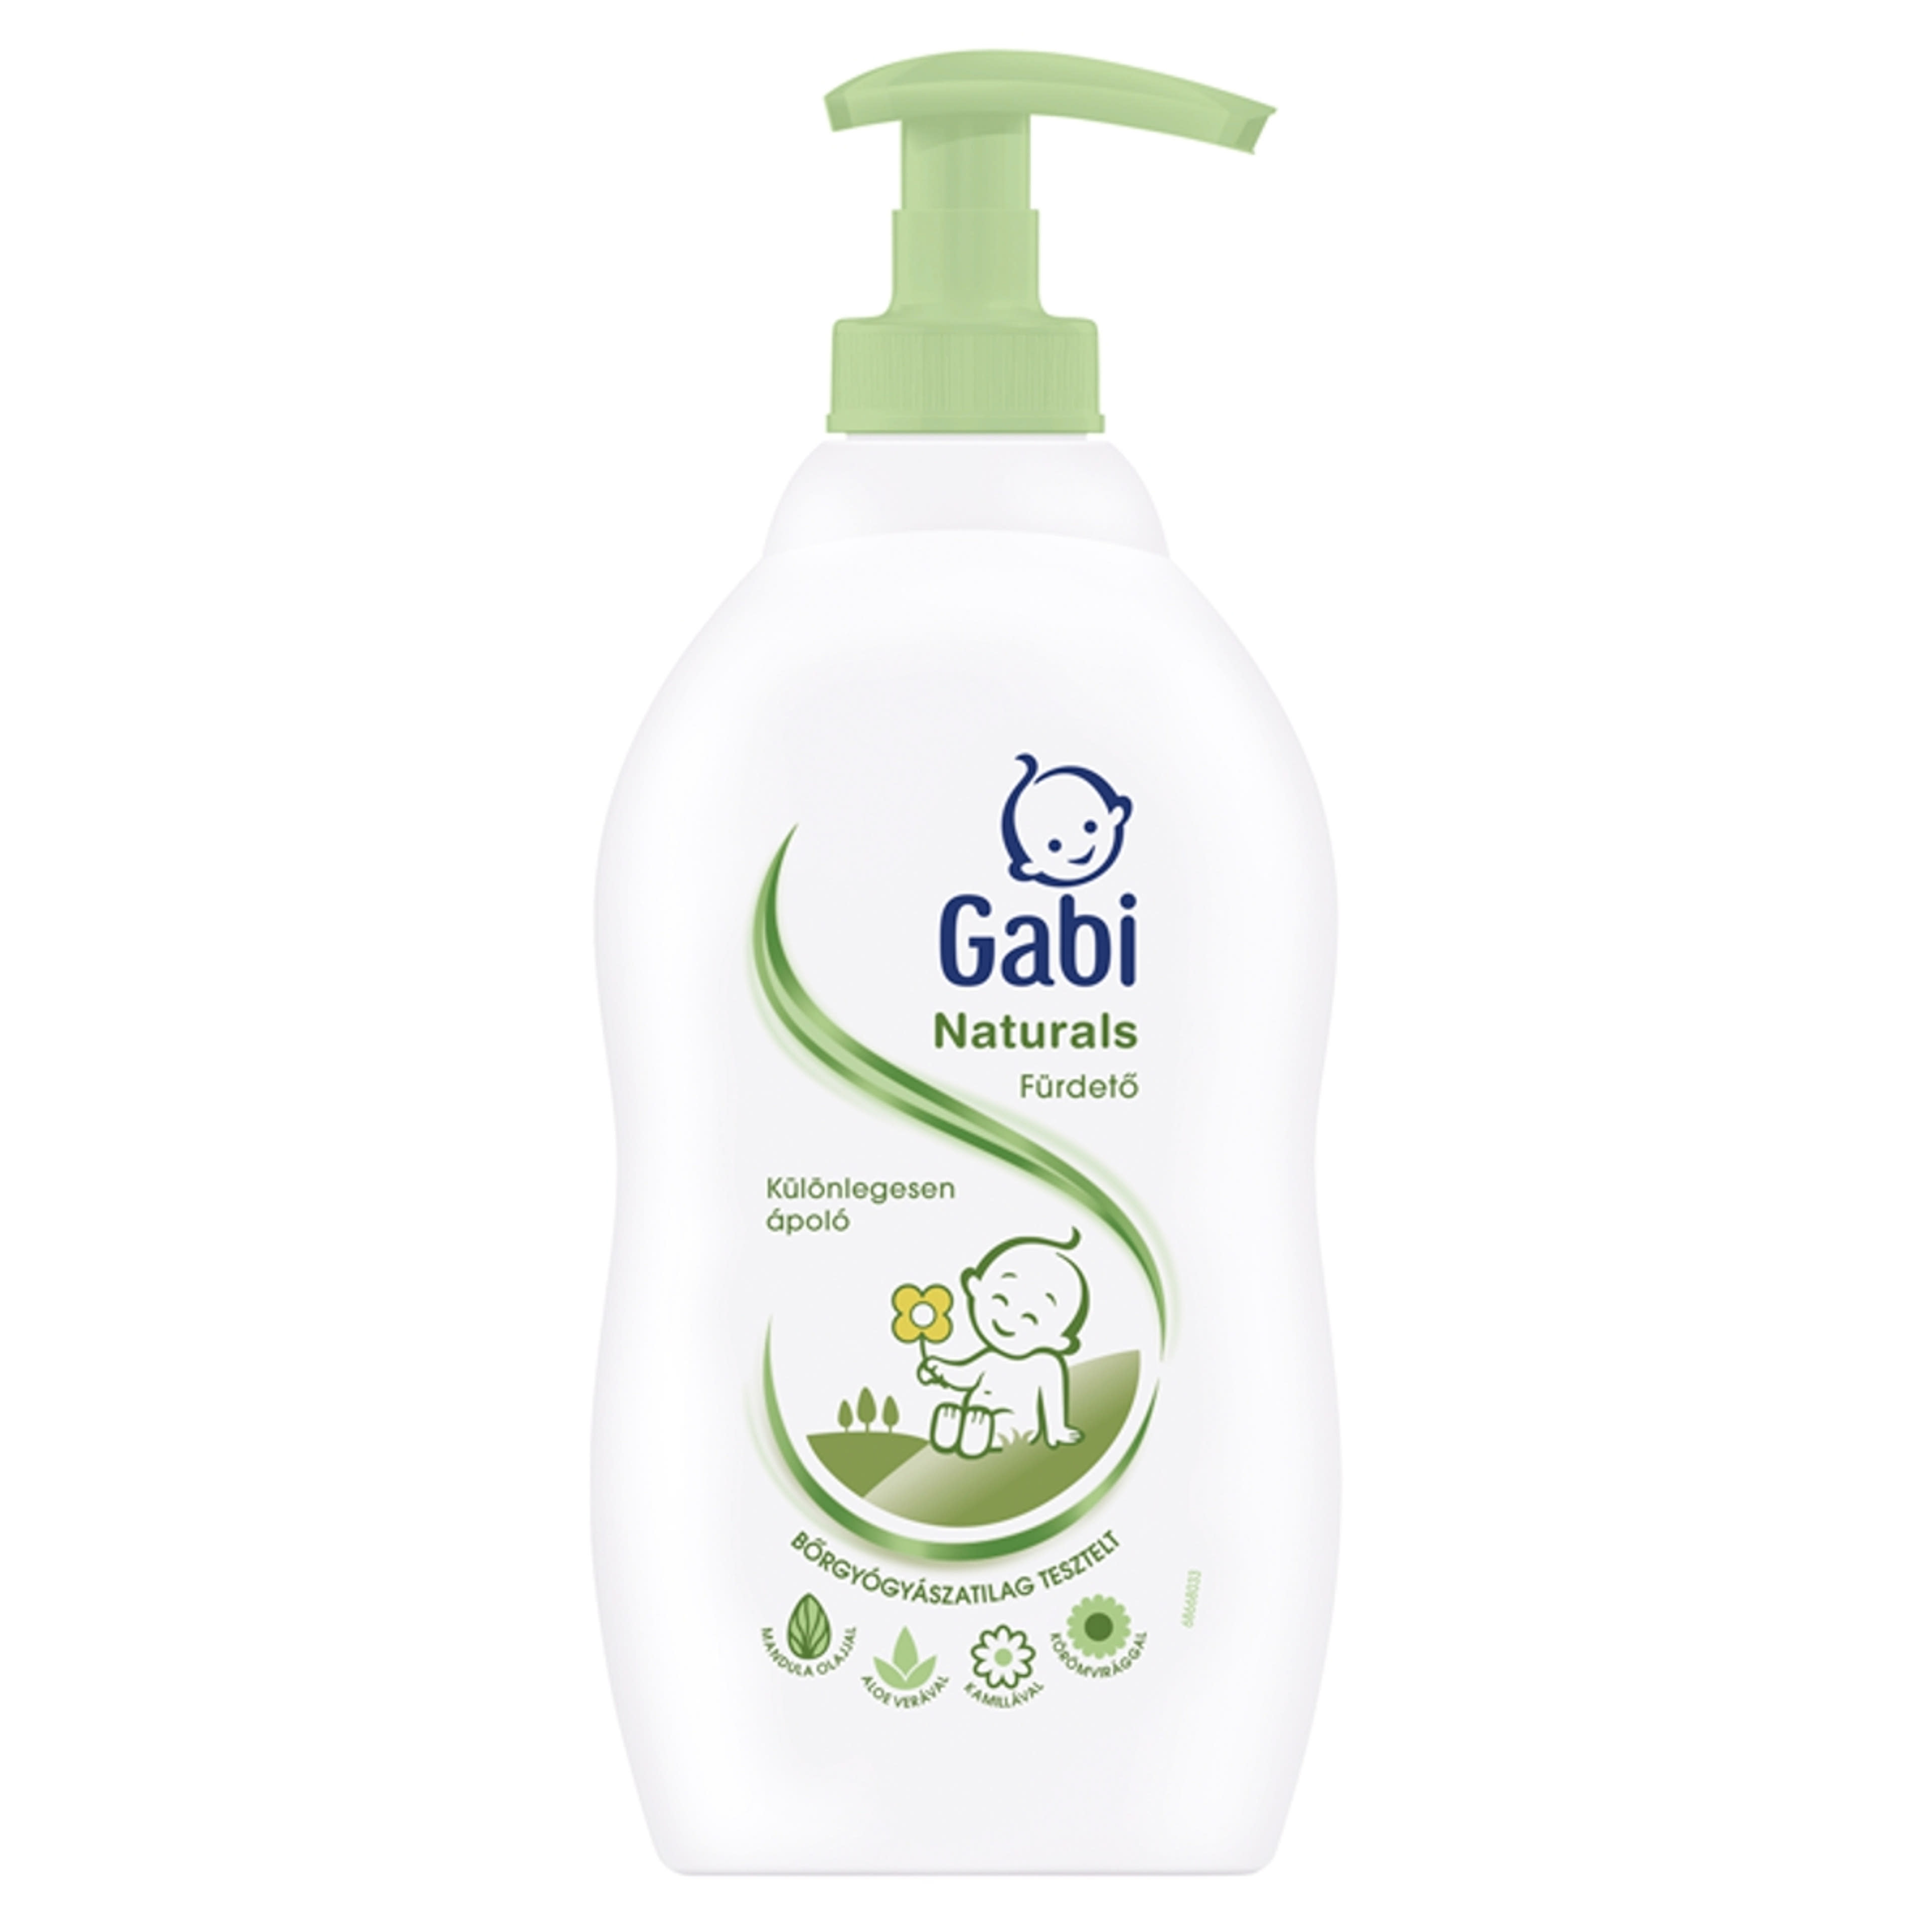 Gabi Naturals Fürdető - 400 ml-1